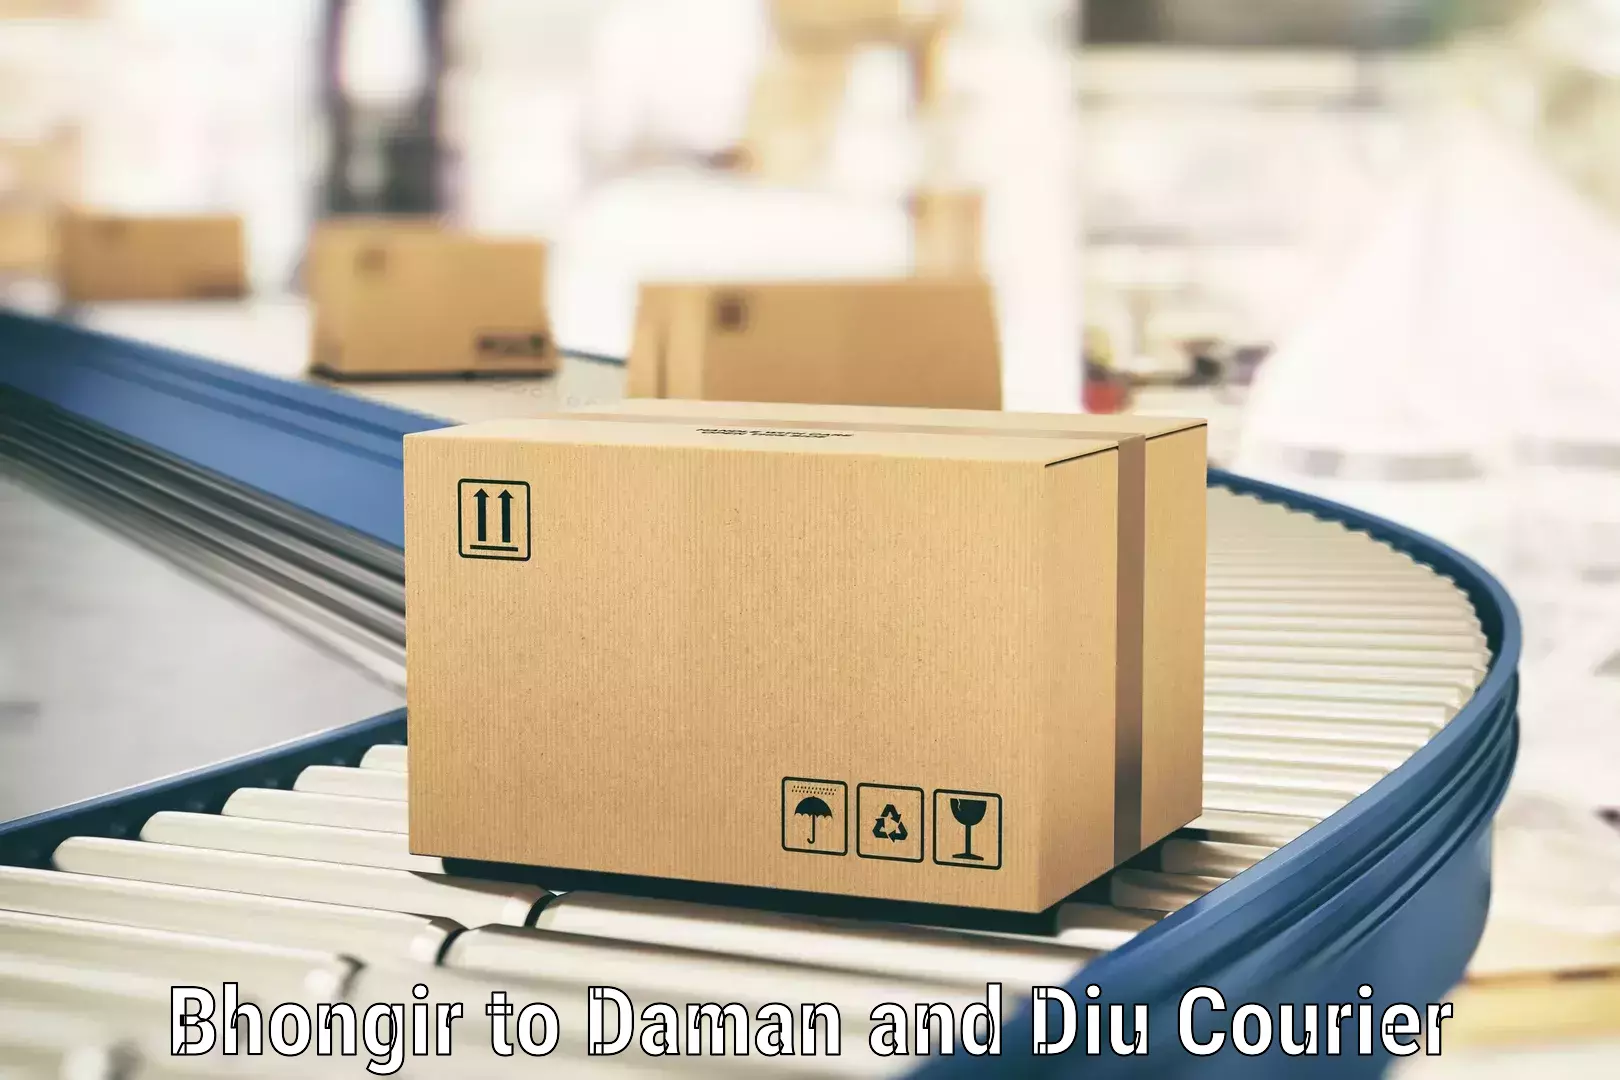 Efficient logistics management Bhongir to Daman and Diu